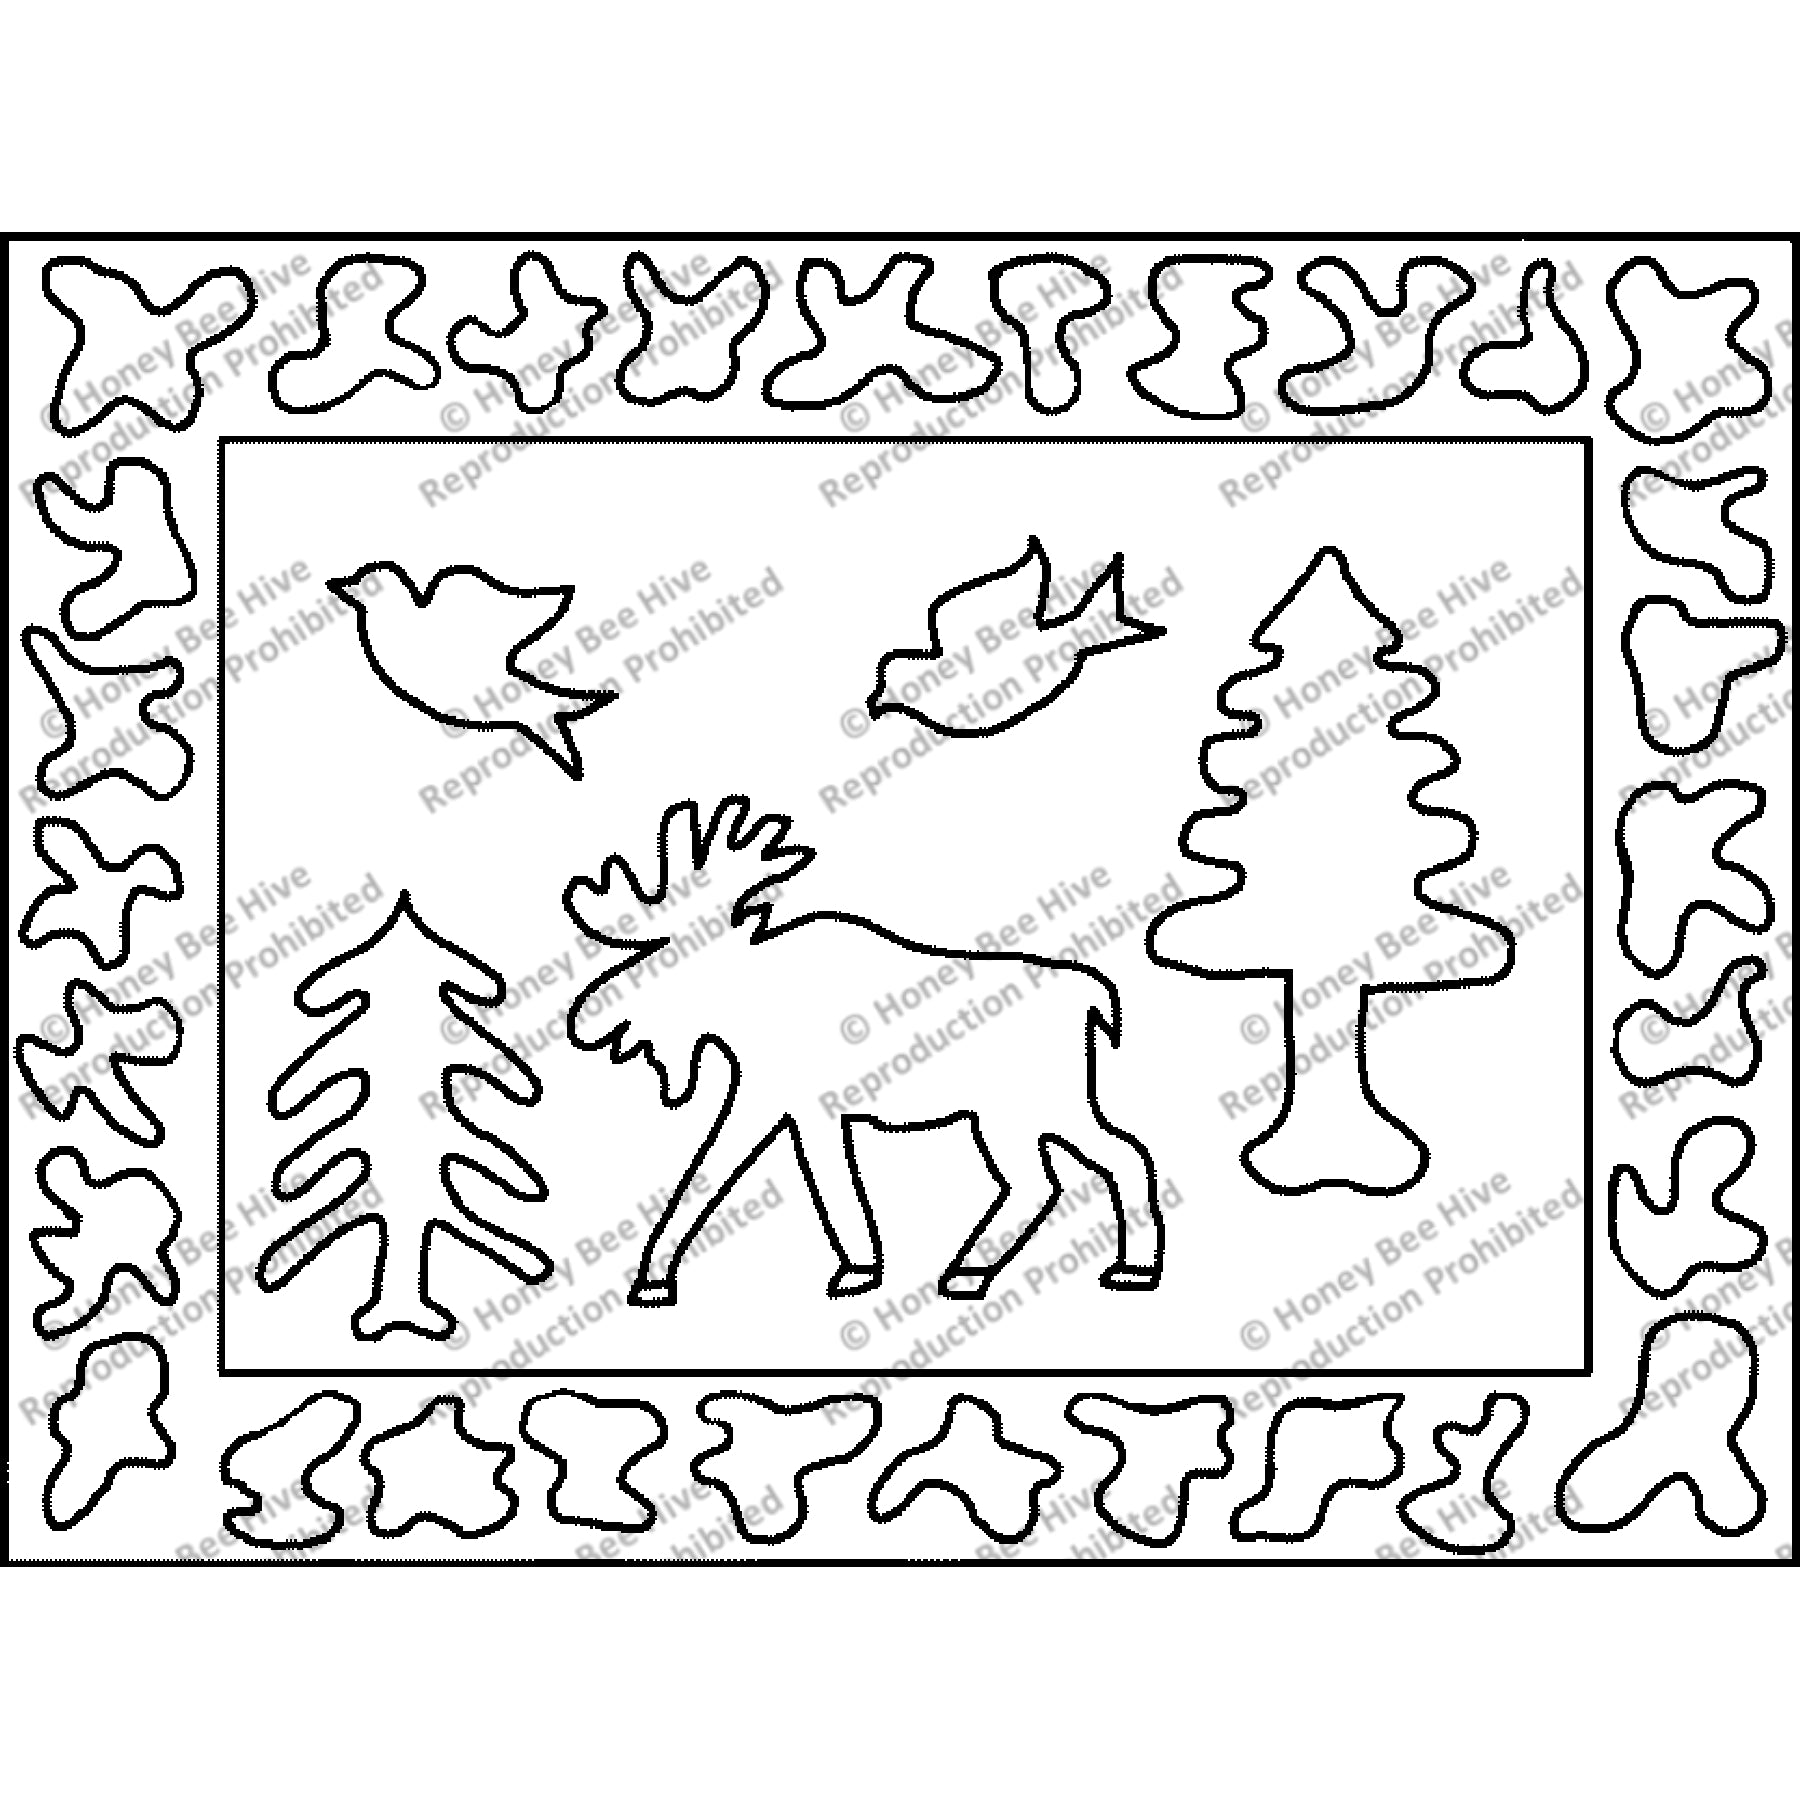 Moose Walk, rug hooking pattern